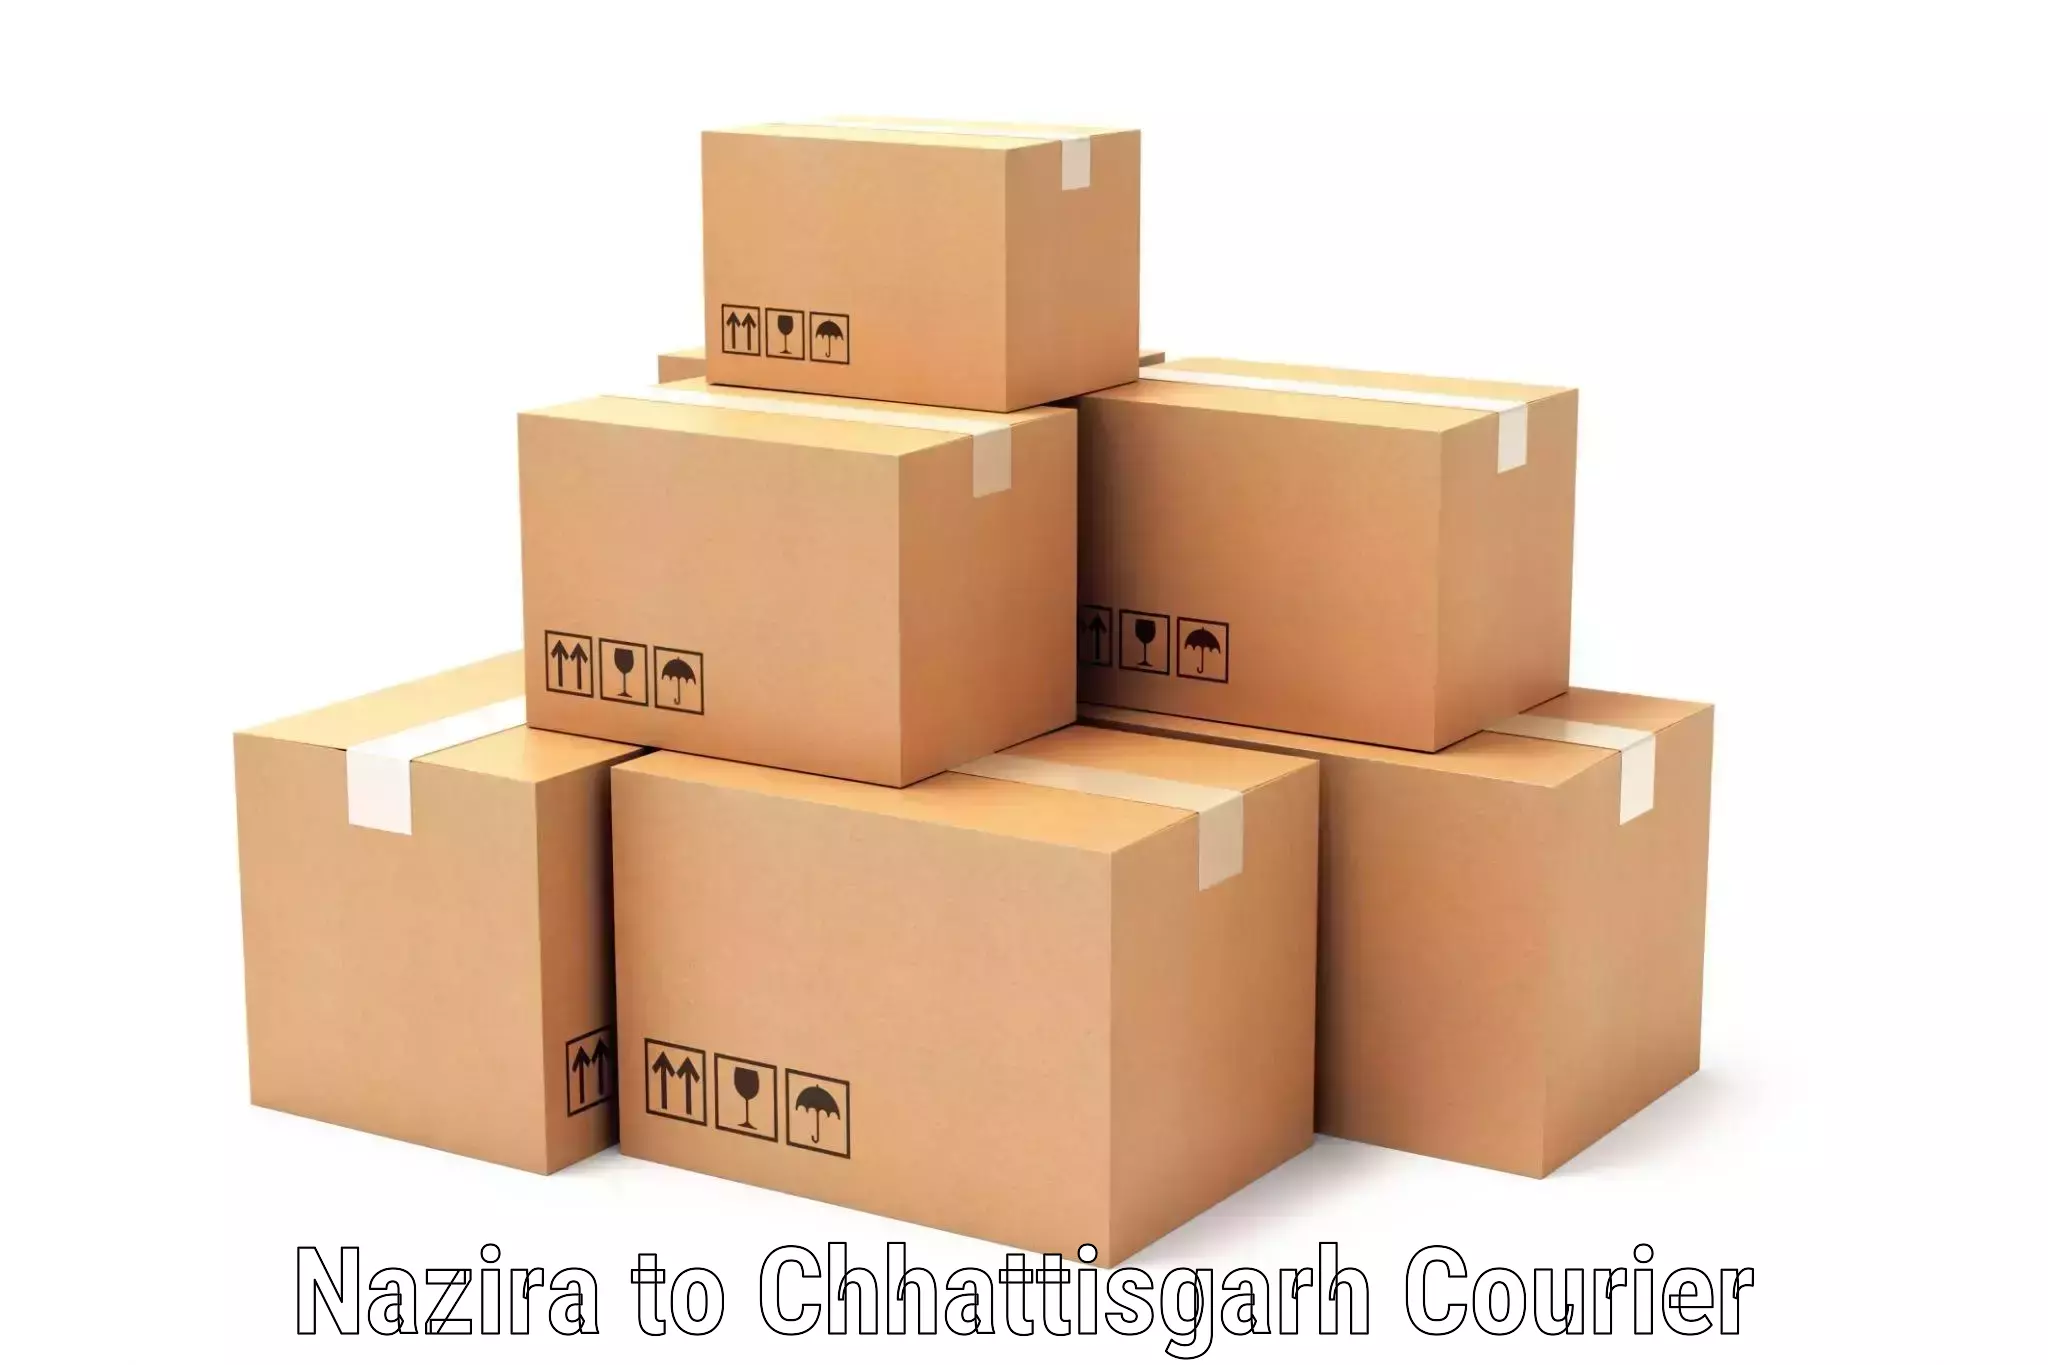 Premium delivery services in Nazira to Patna Chhattisgarh